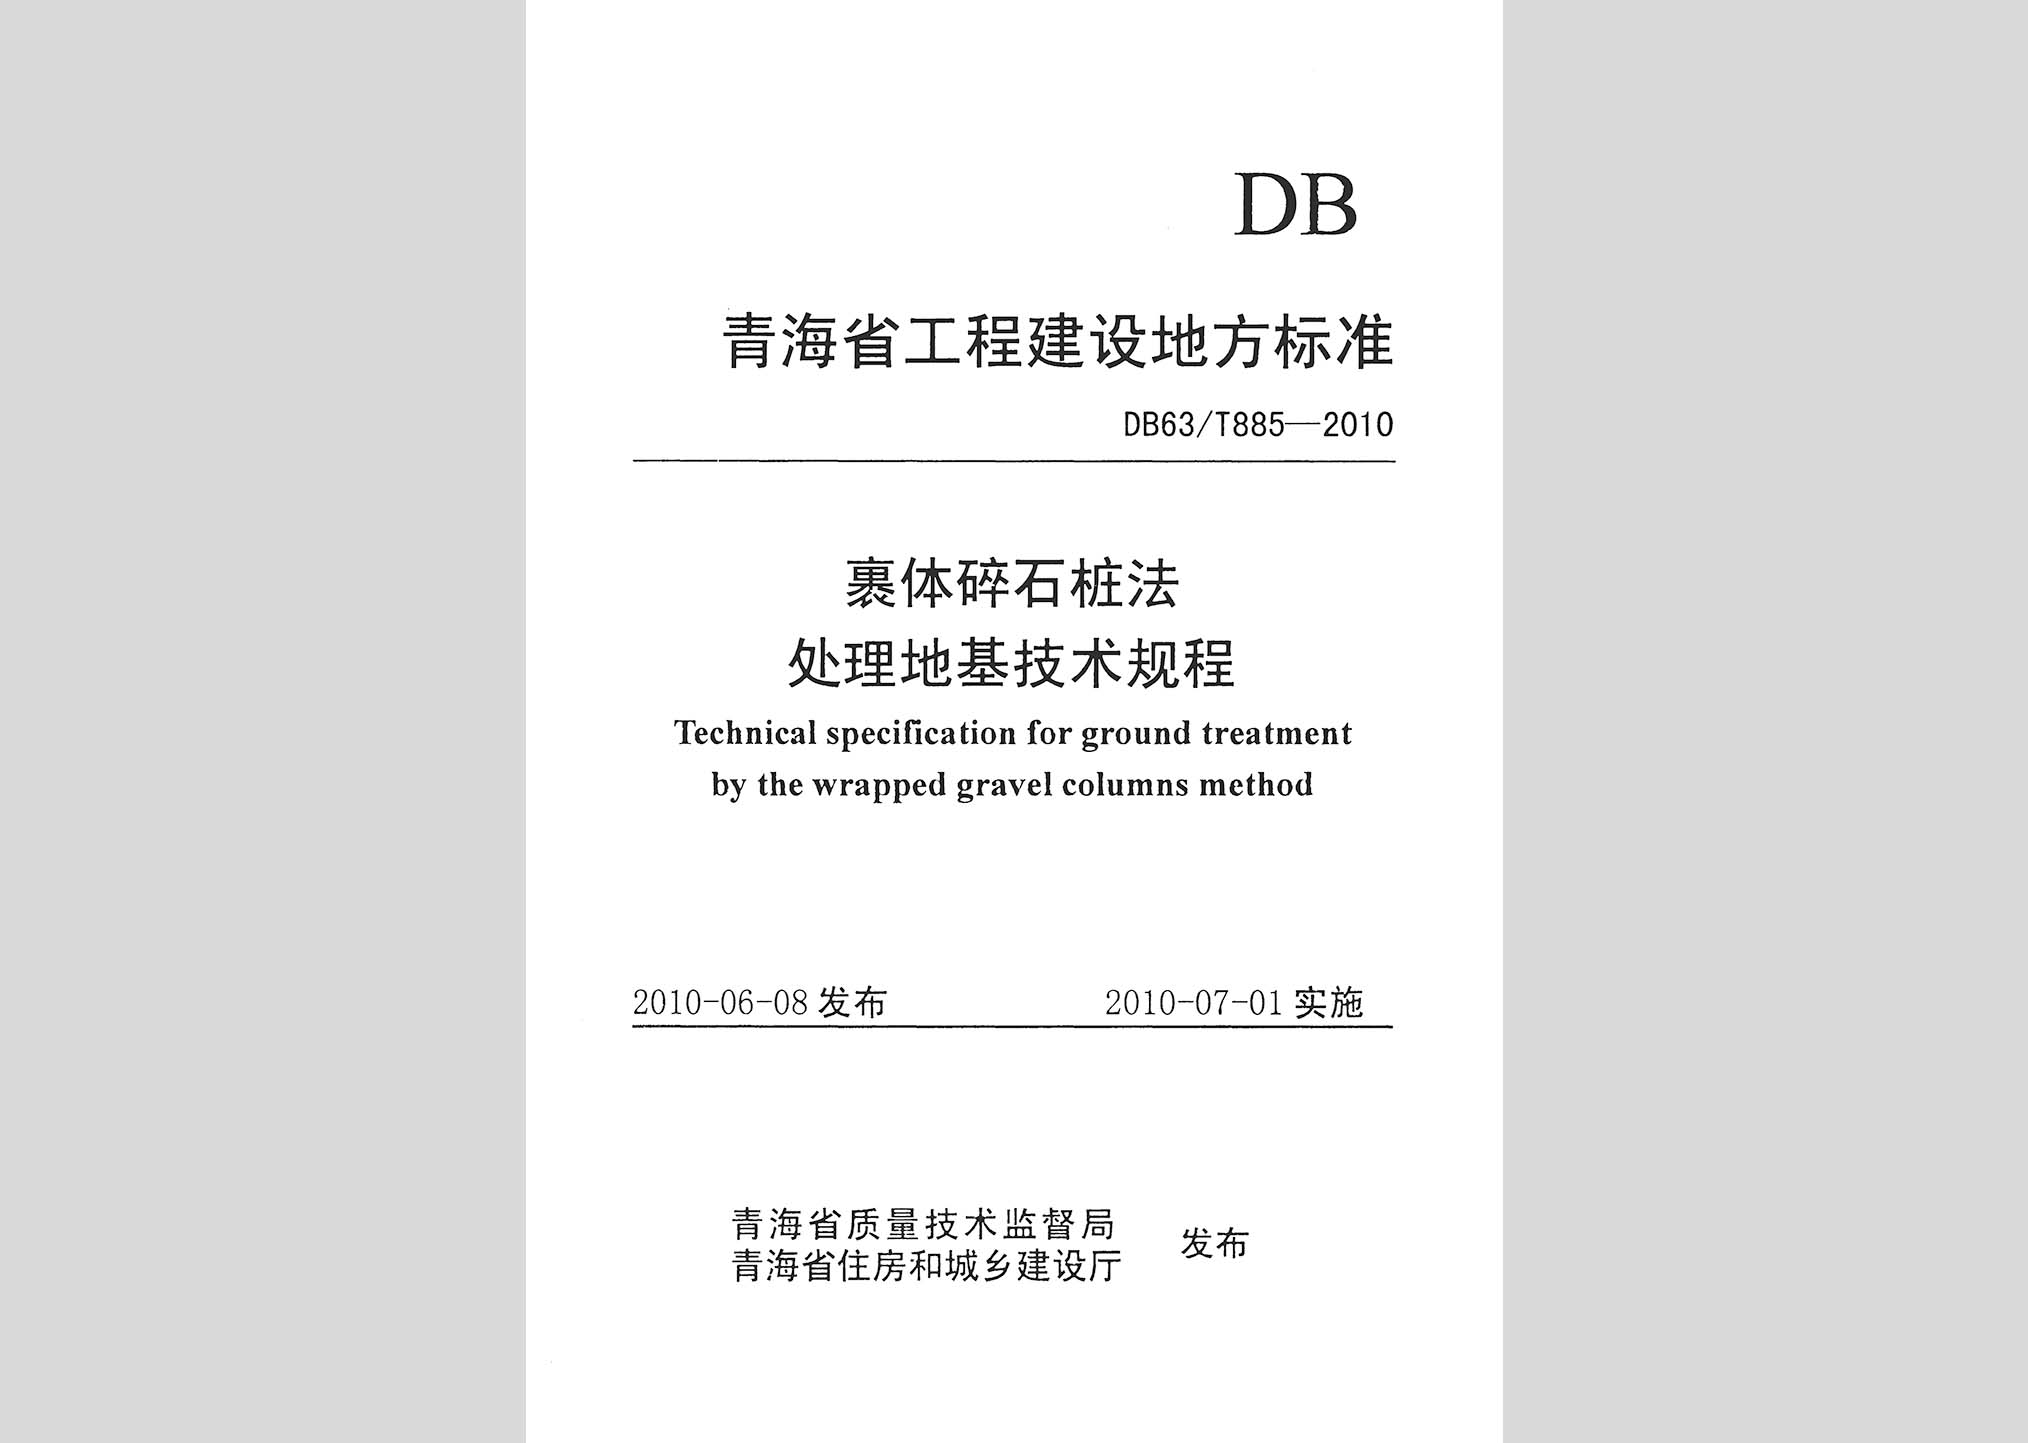 DB63/T885-2010：裹体碎石桩法处理地基技术规程